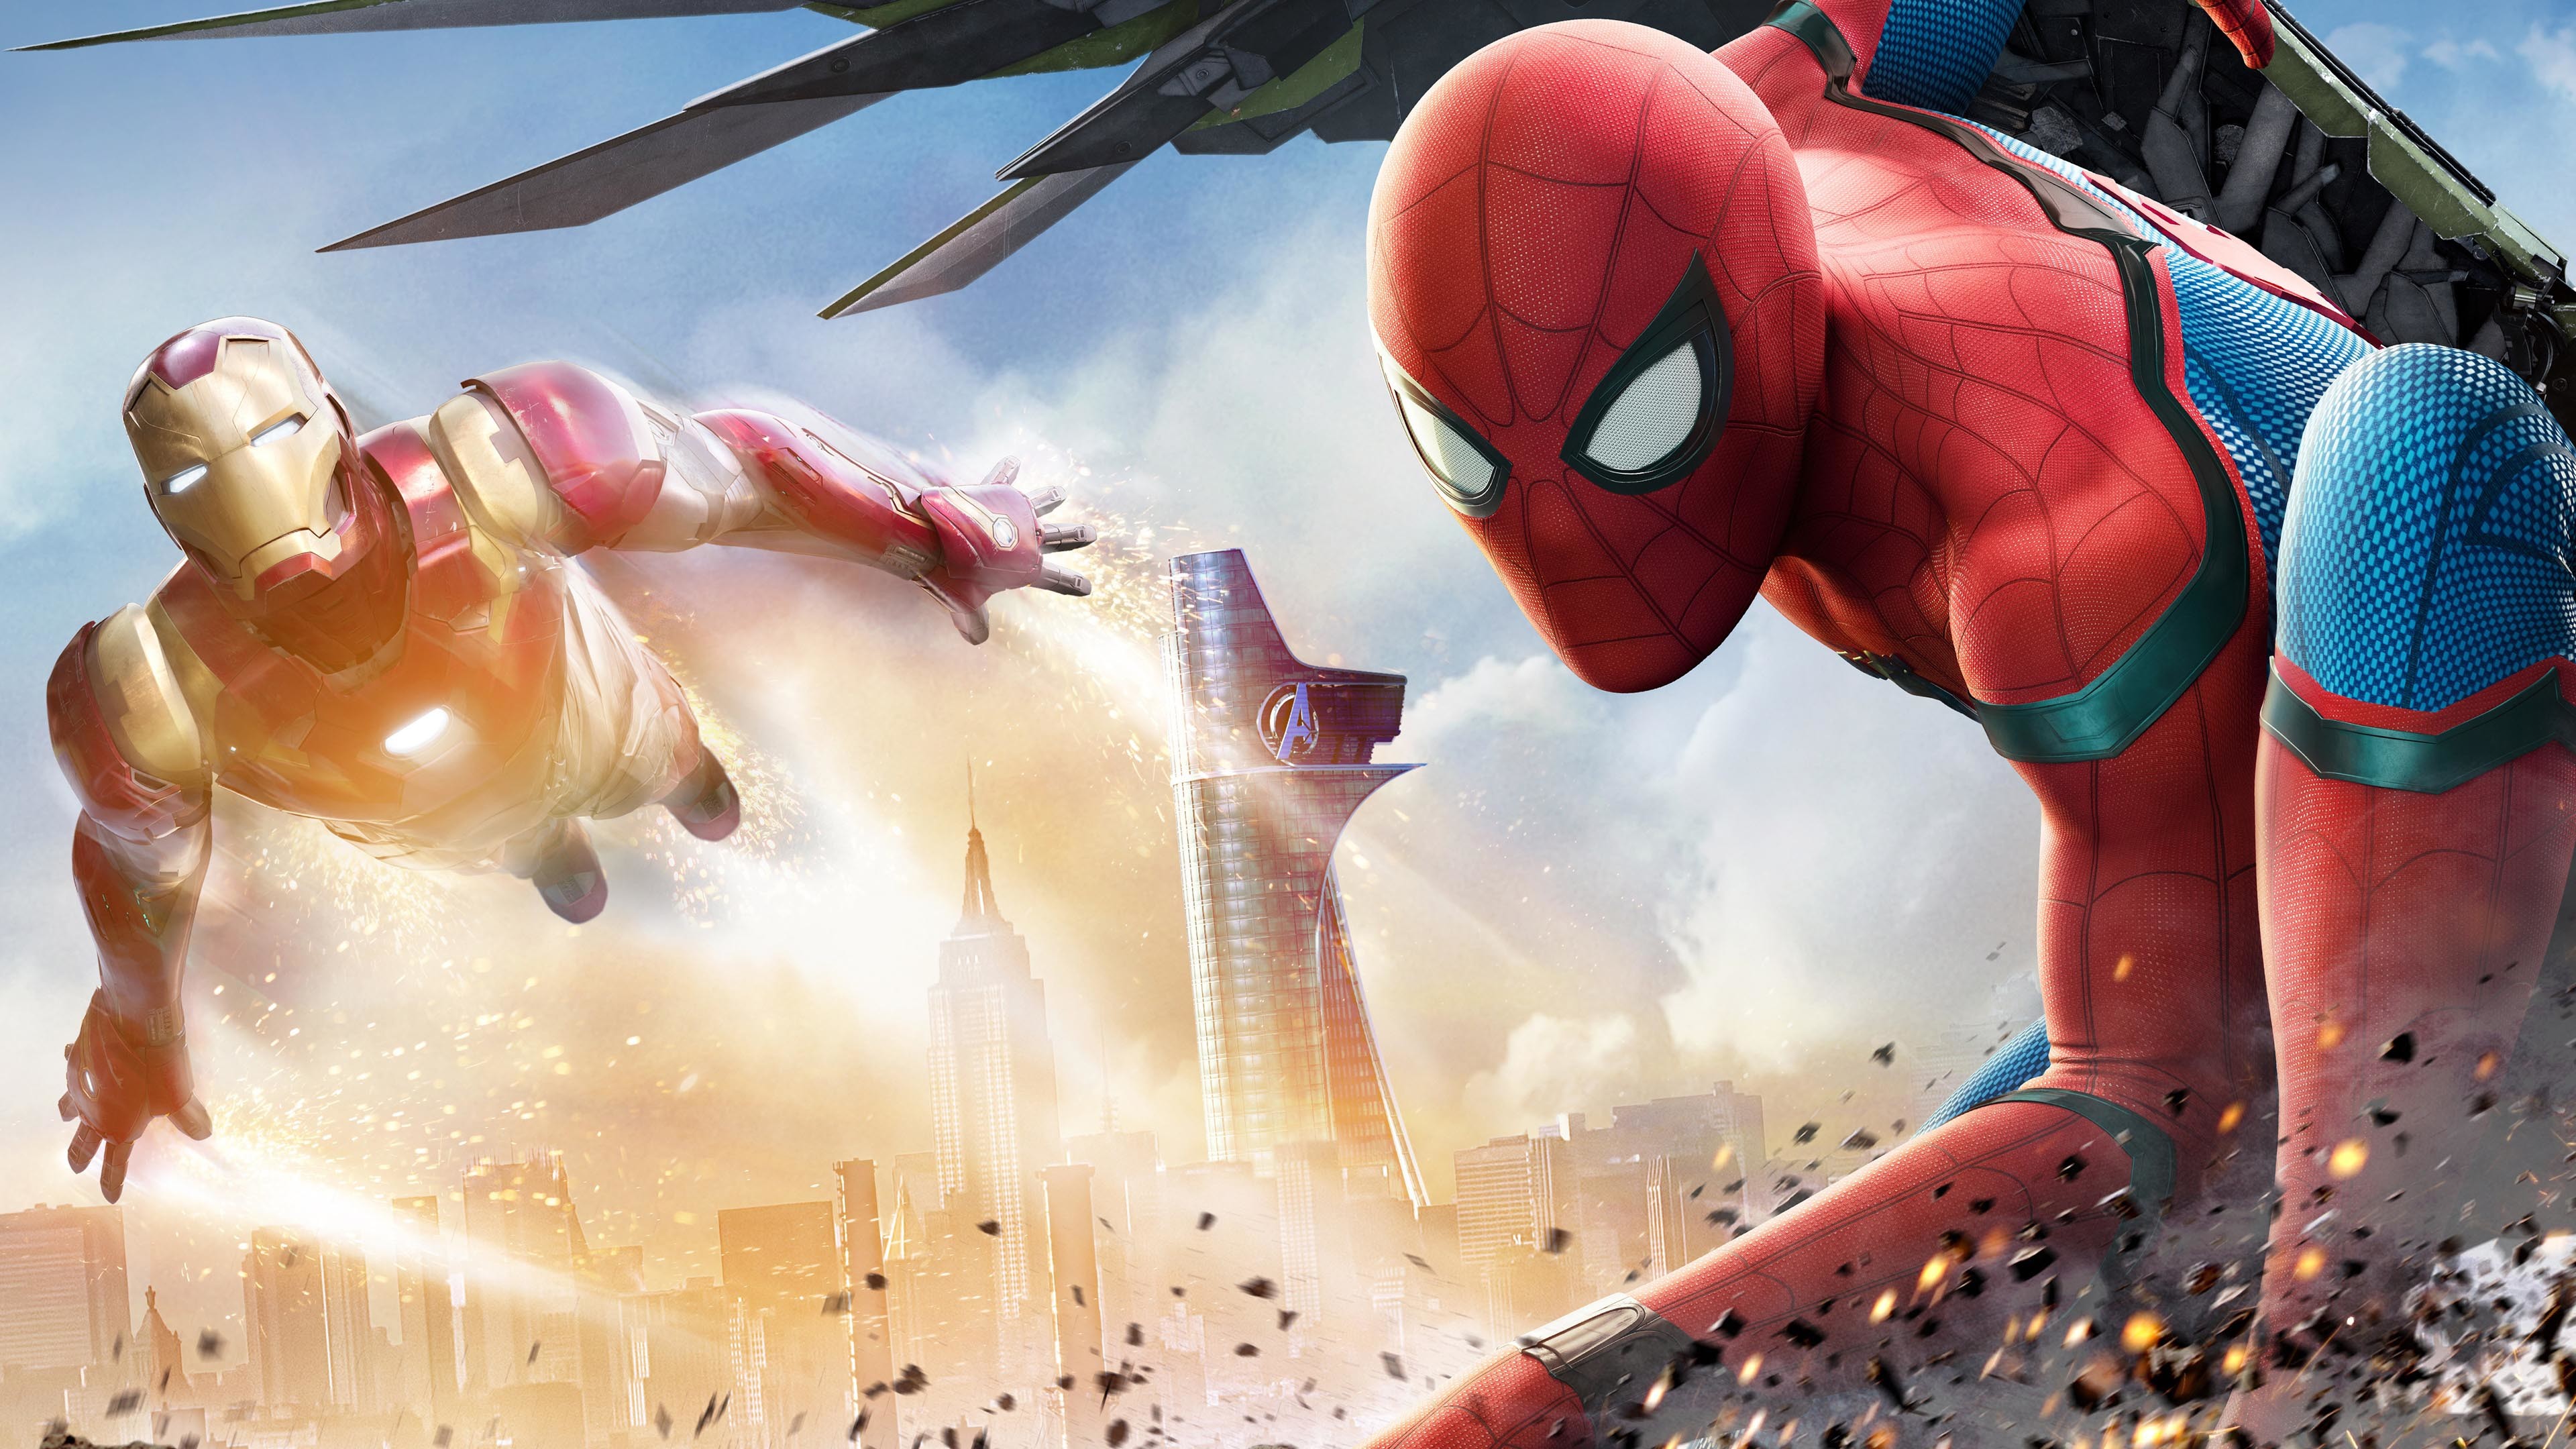 3840x2160 Iron Man & Spider-Man - Spider-Man: Homecoming (2017) 4K